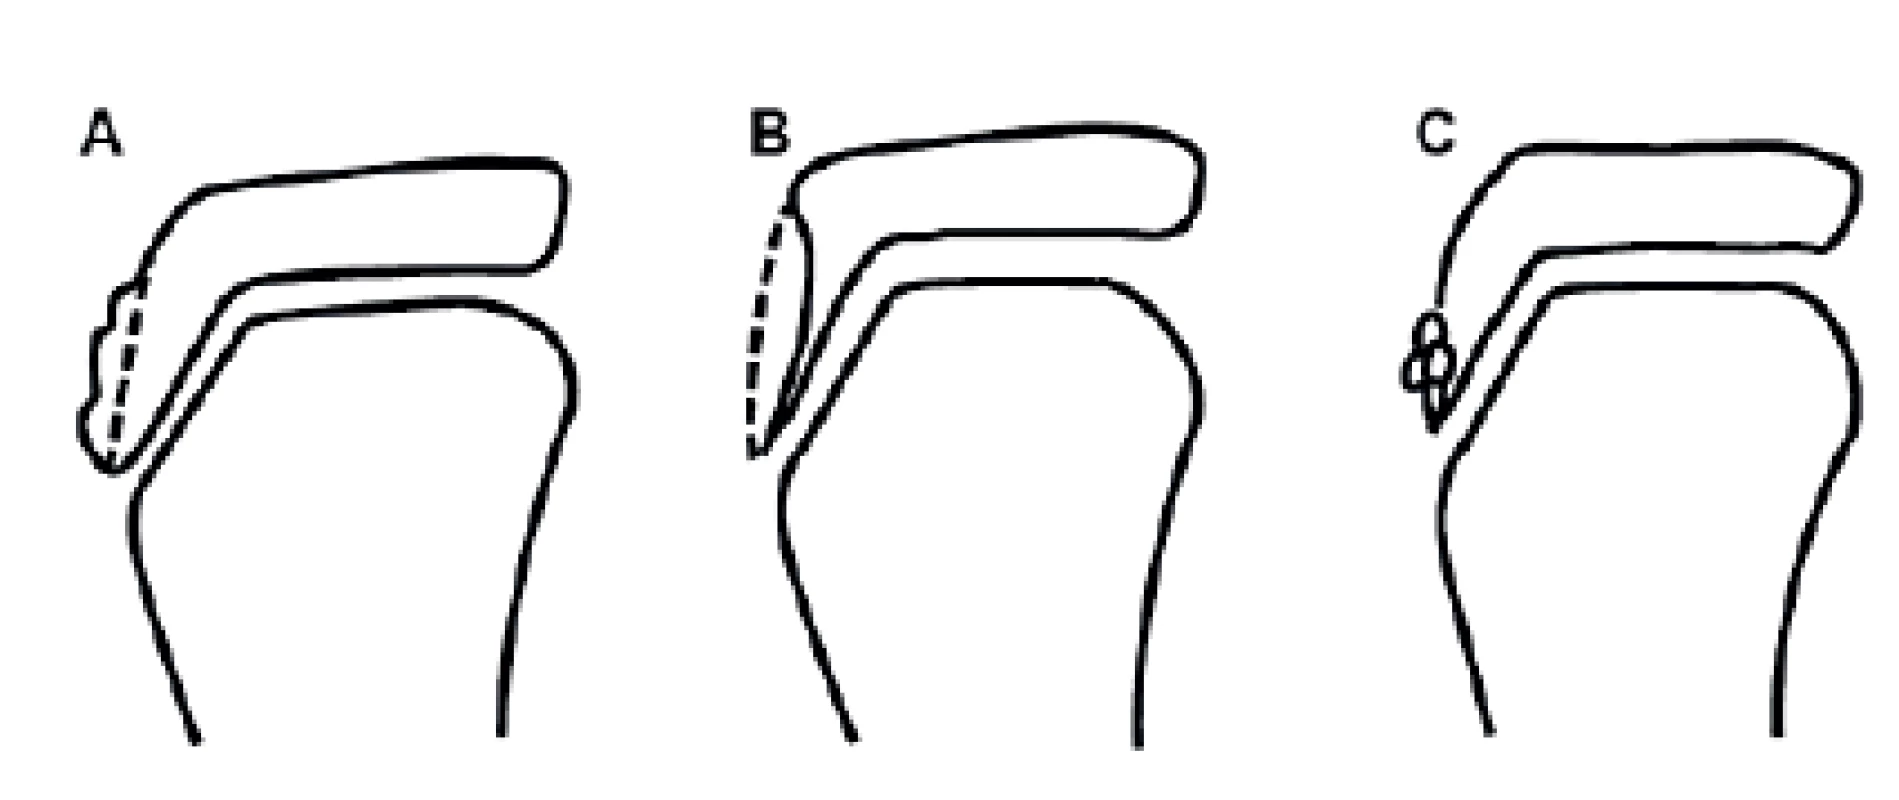 Závažnost OS dle RTG nálezu: A) změna nebo lehká elevace tuberositas tibiae;  
B) radiolucence tuberositas tibiae; C) fragmentace tuberositas tibiae (8).